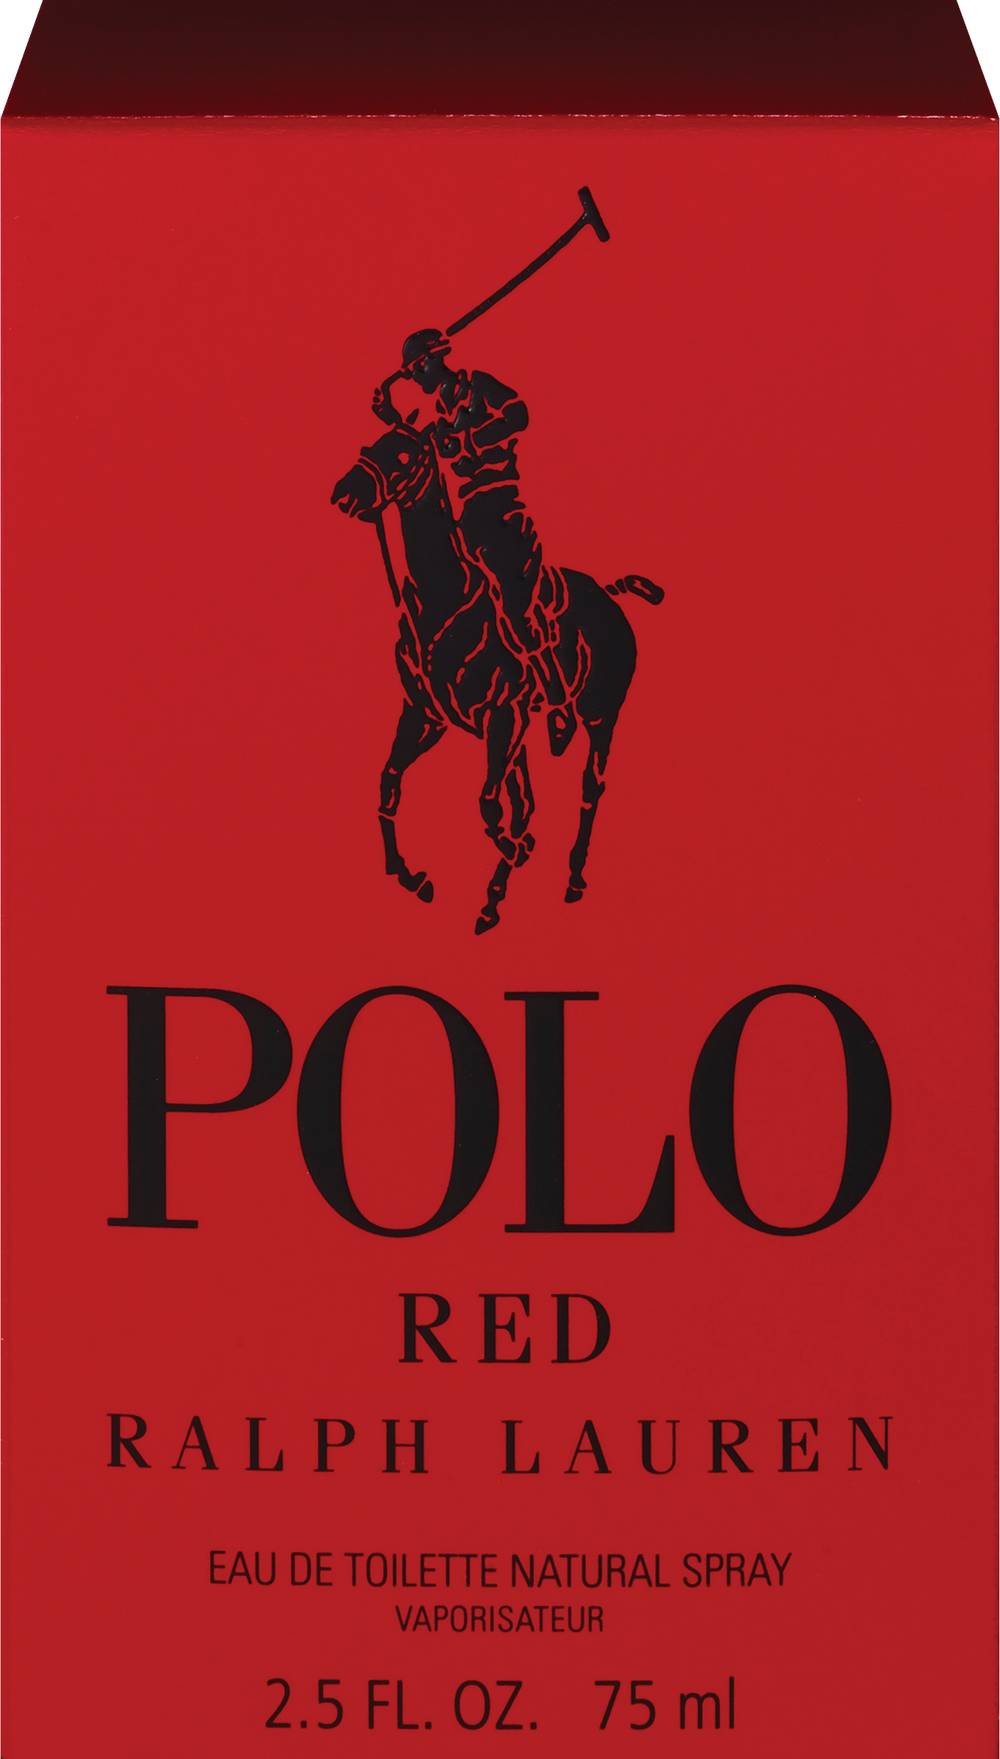 Ralph Lauren Polo Red Eau de Toilette Spray For Men